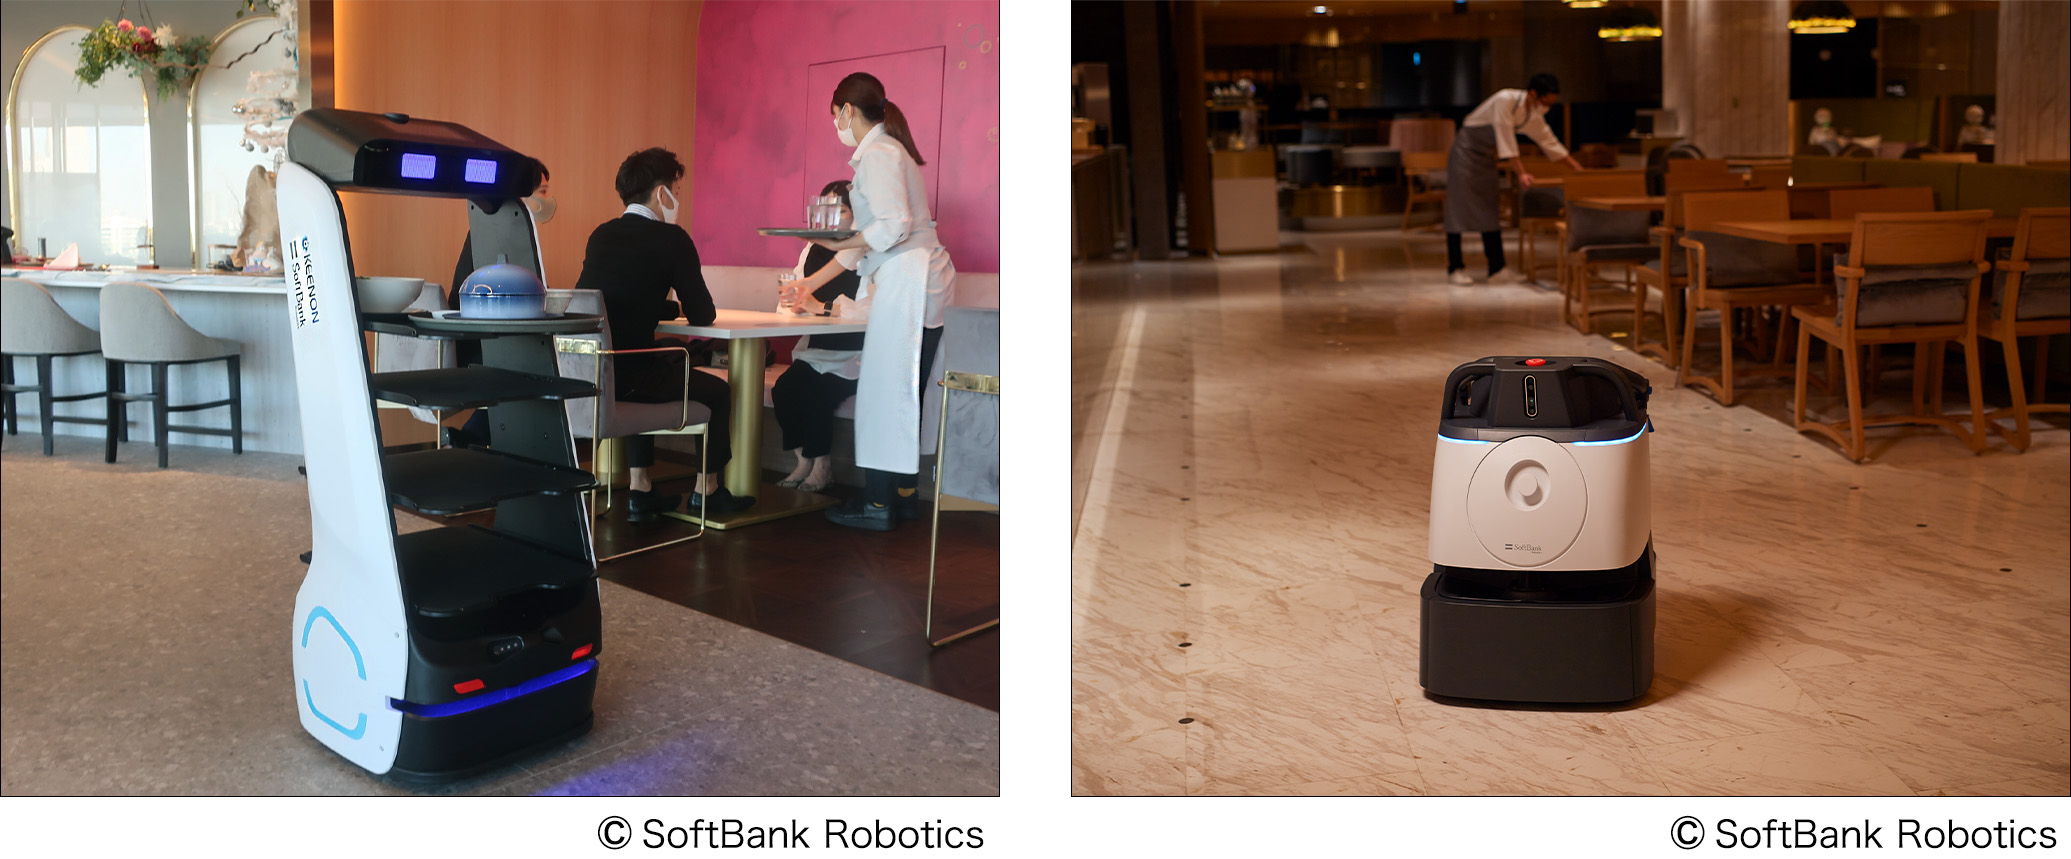 森トラスト、ソフトバンクロボティクス、Octa Robotics、三菱ＨＣキャピタルにおける研究開発が経済産業省のロボットフレンドリーな環境構築支援事業に採択   あらゆる施設環境におけるサービスロボット活用の普及を図る